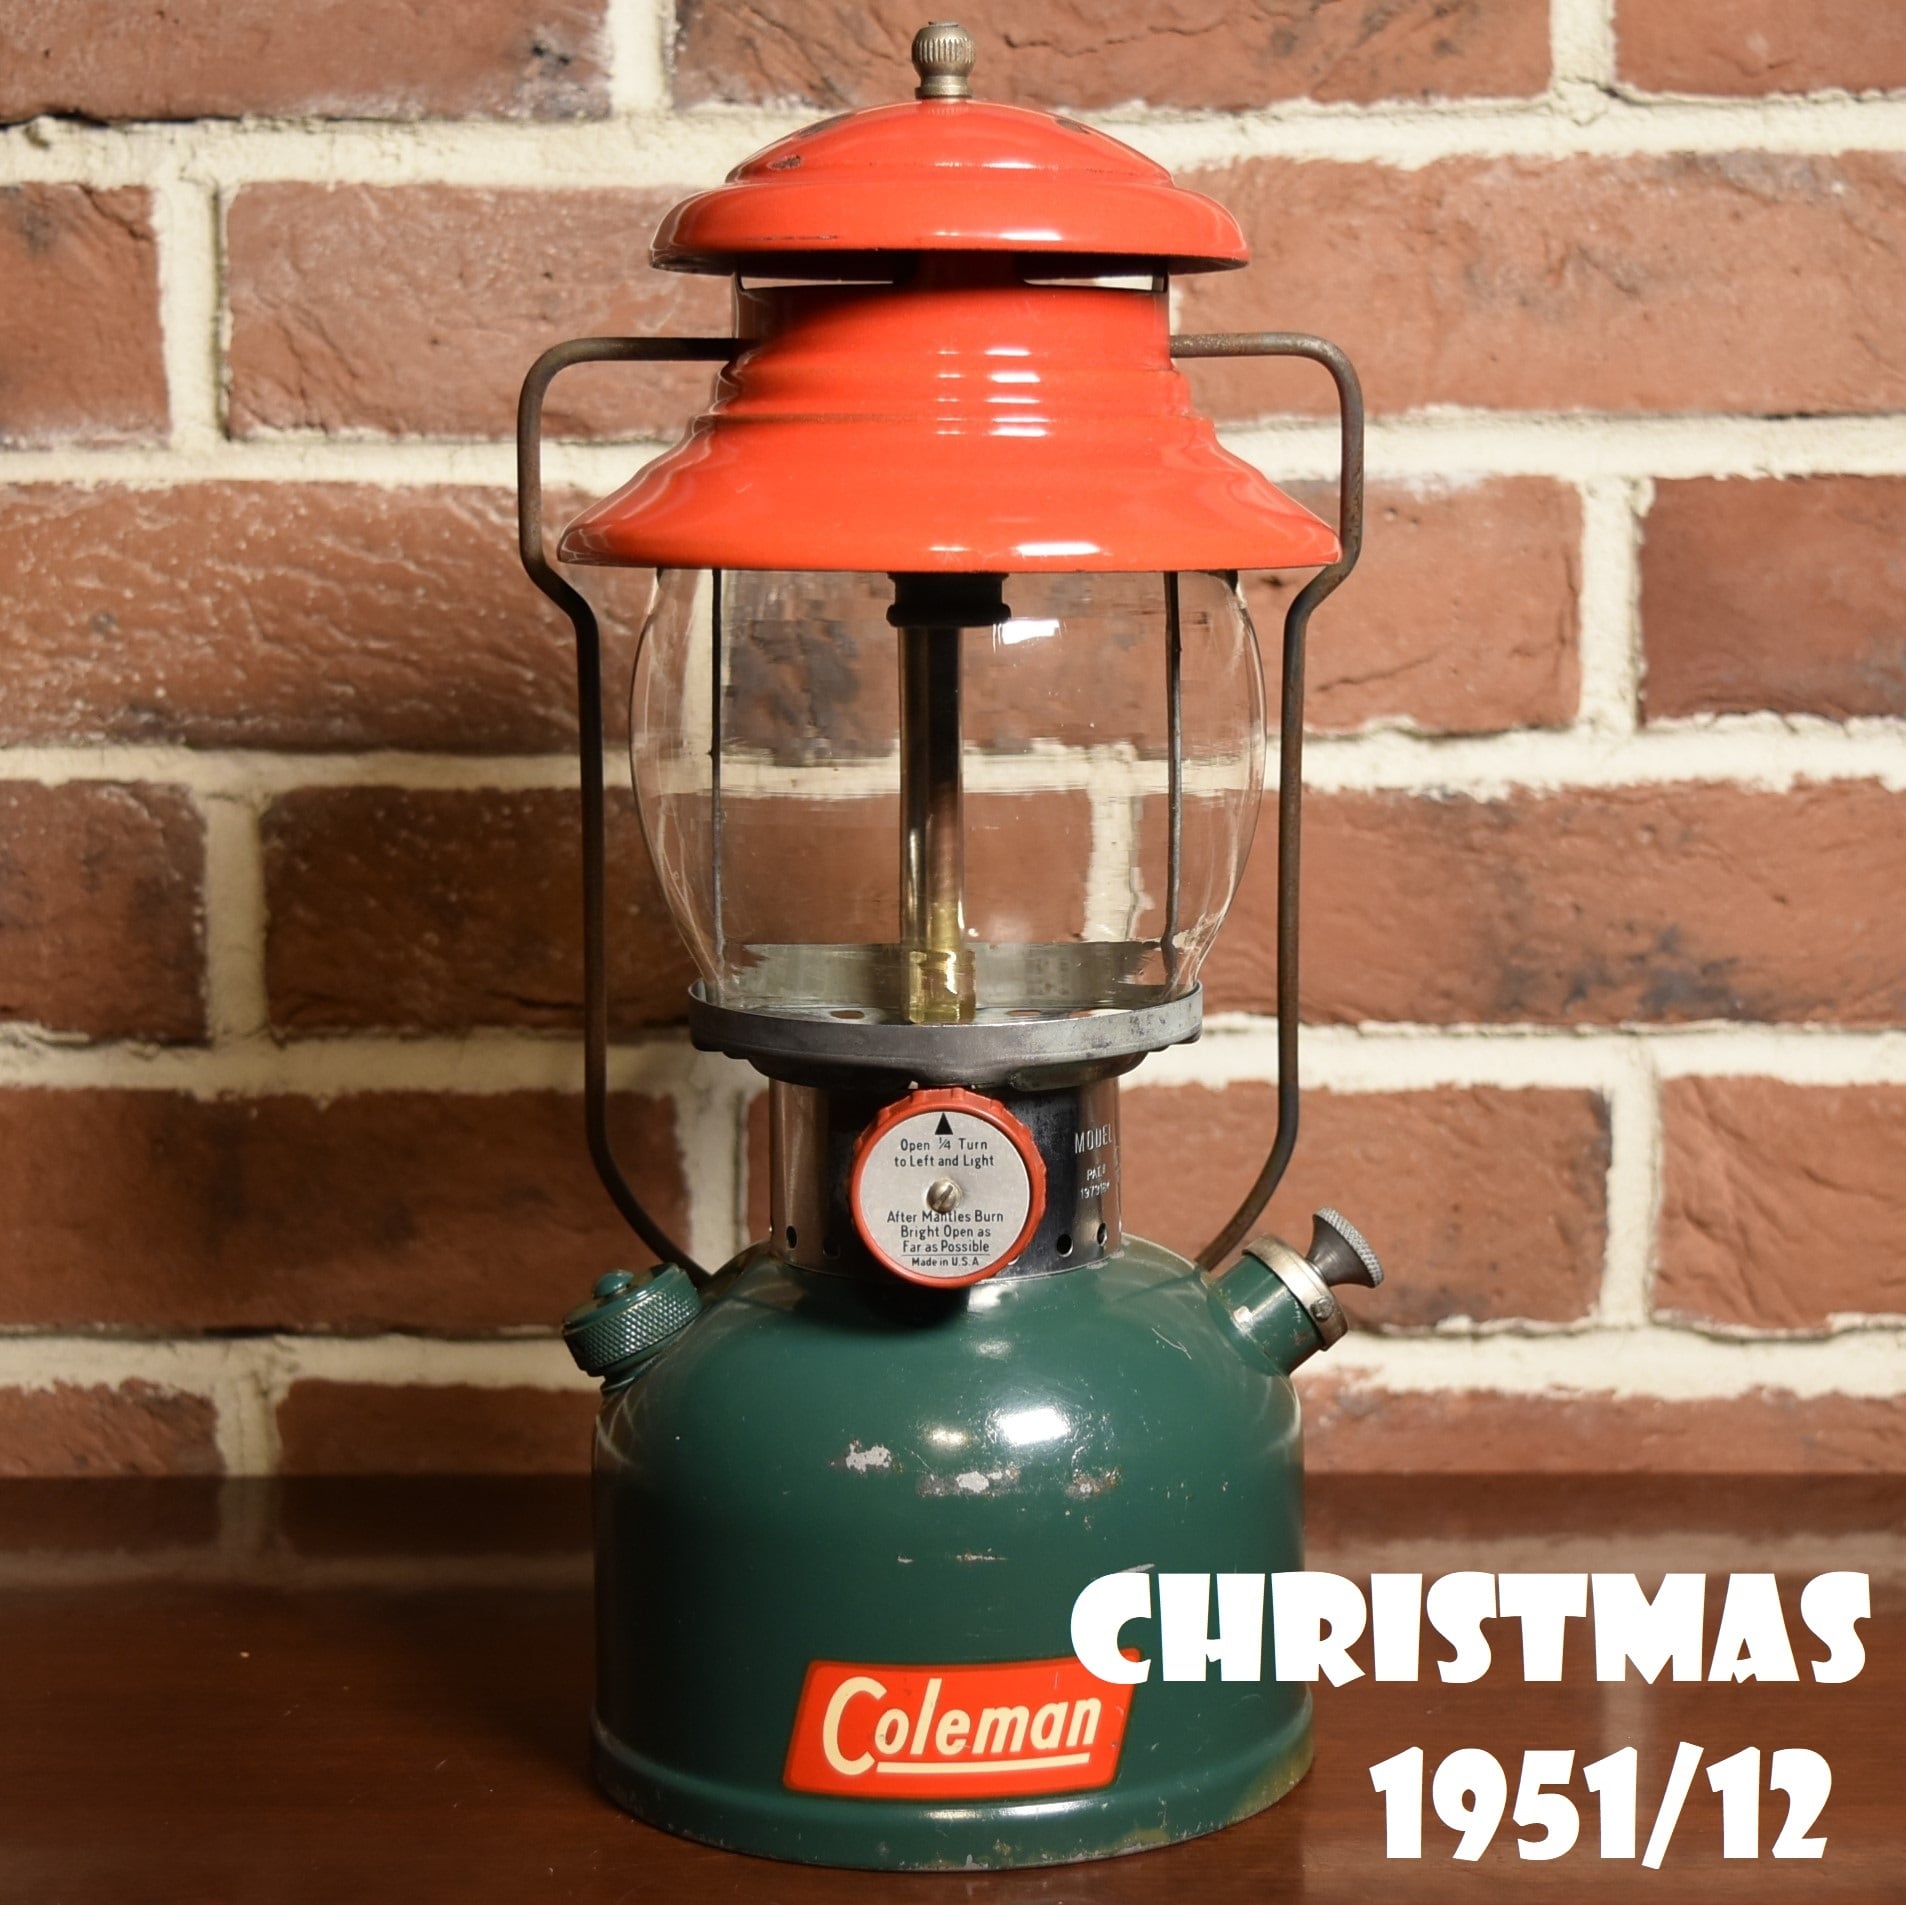 コールマン 200A 1951年12月製造 CHRISTMAS クリスマス ランタン COLEMAN デカール貼付最初期モデル 完全オリジナル 美品  | スーパービンテージデポ【Super Vintage Depot】 powered by BASE